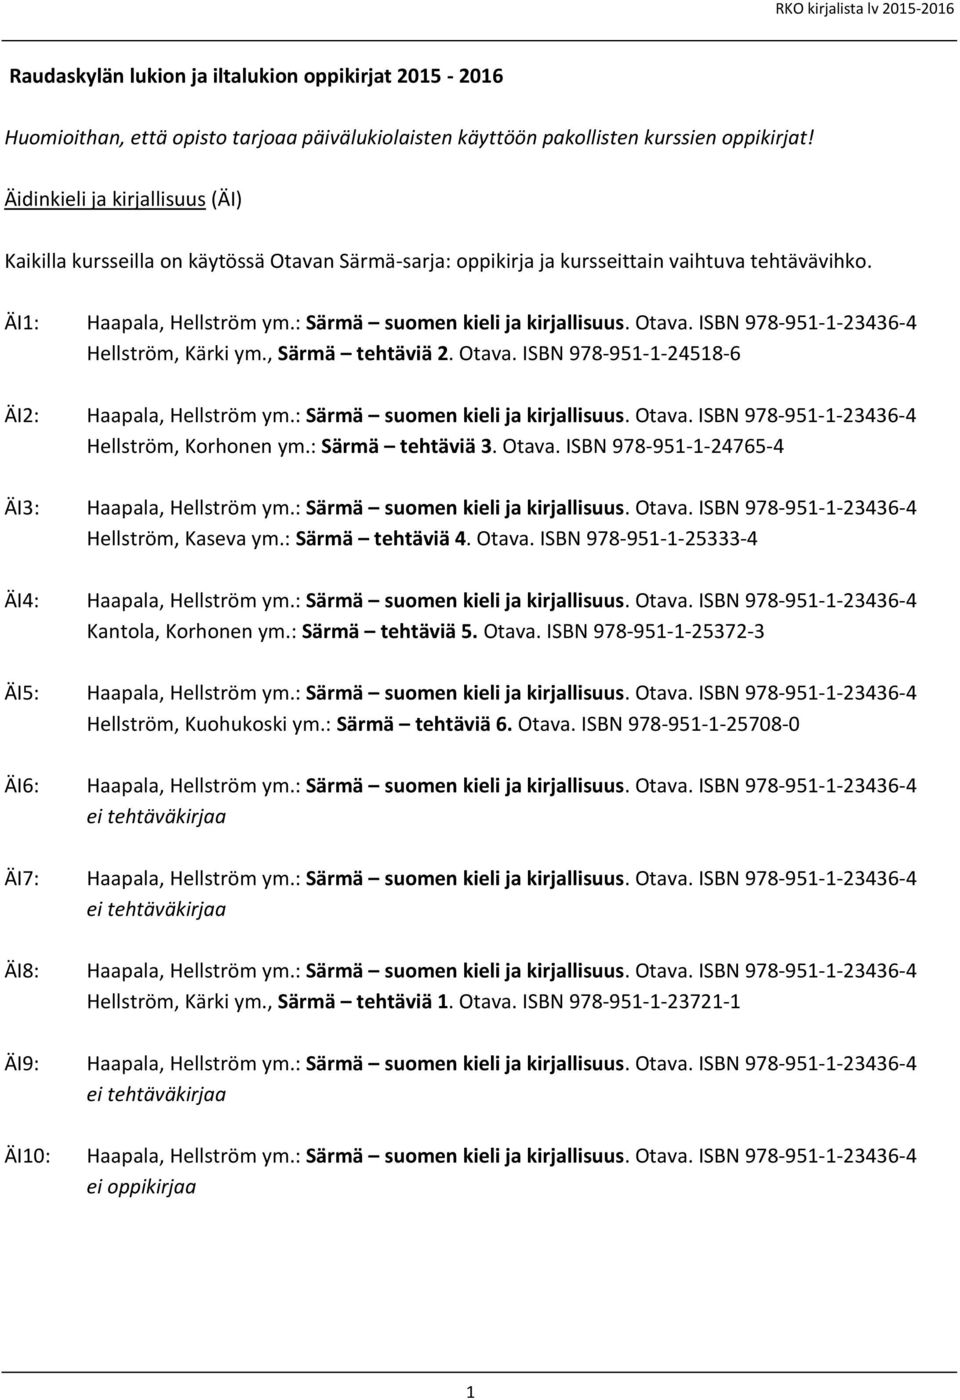 Otava. ISBN 978-951-1-23436-4 Hellström, Kärki ym., Särmä tehtäviä 2. Otava. ISBN 978-951-1-24518-6 ÄI2: Haapala, Hellström ym.: Särmä suomen kieli ja kirjallisuus. Otava. ISBN 978-951-1-23436-4 Hellström, Korhonen ym.